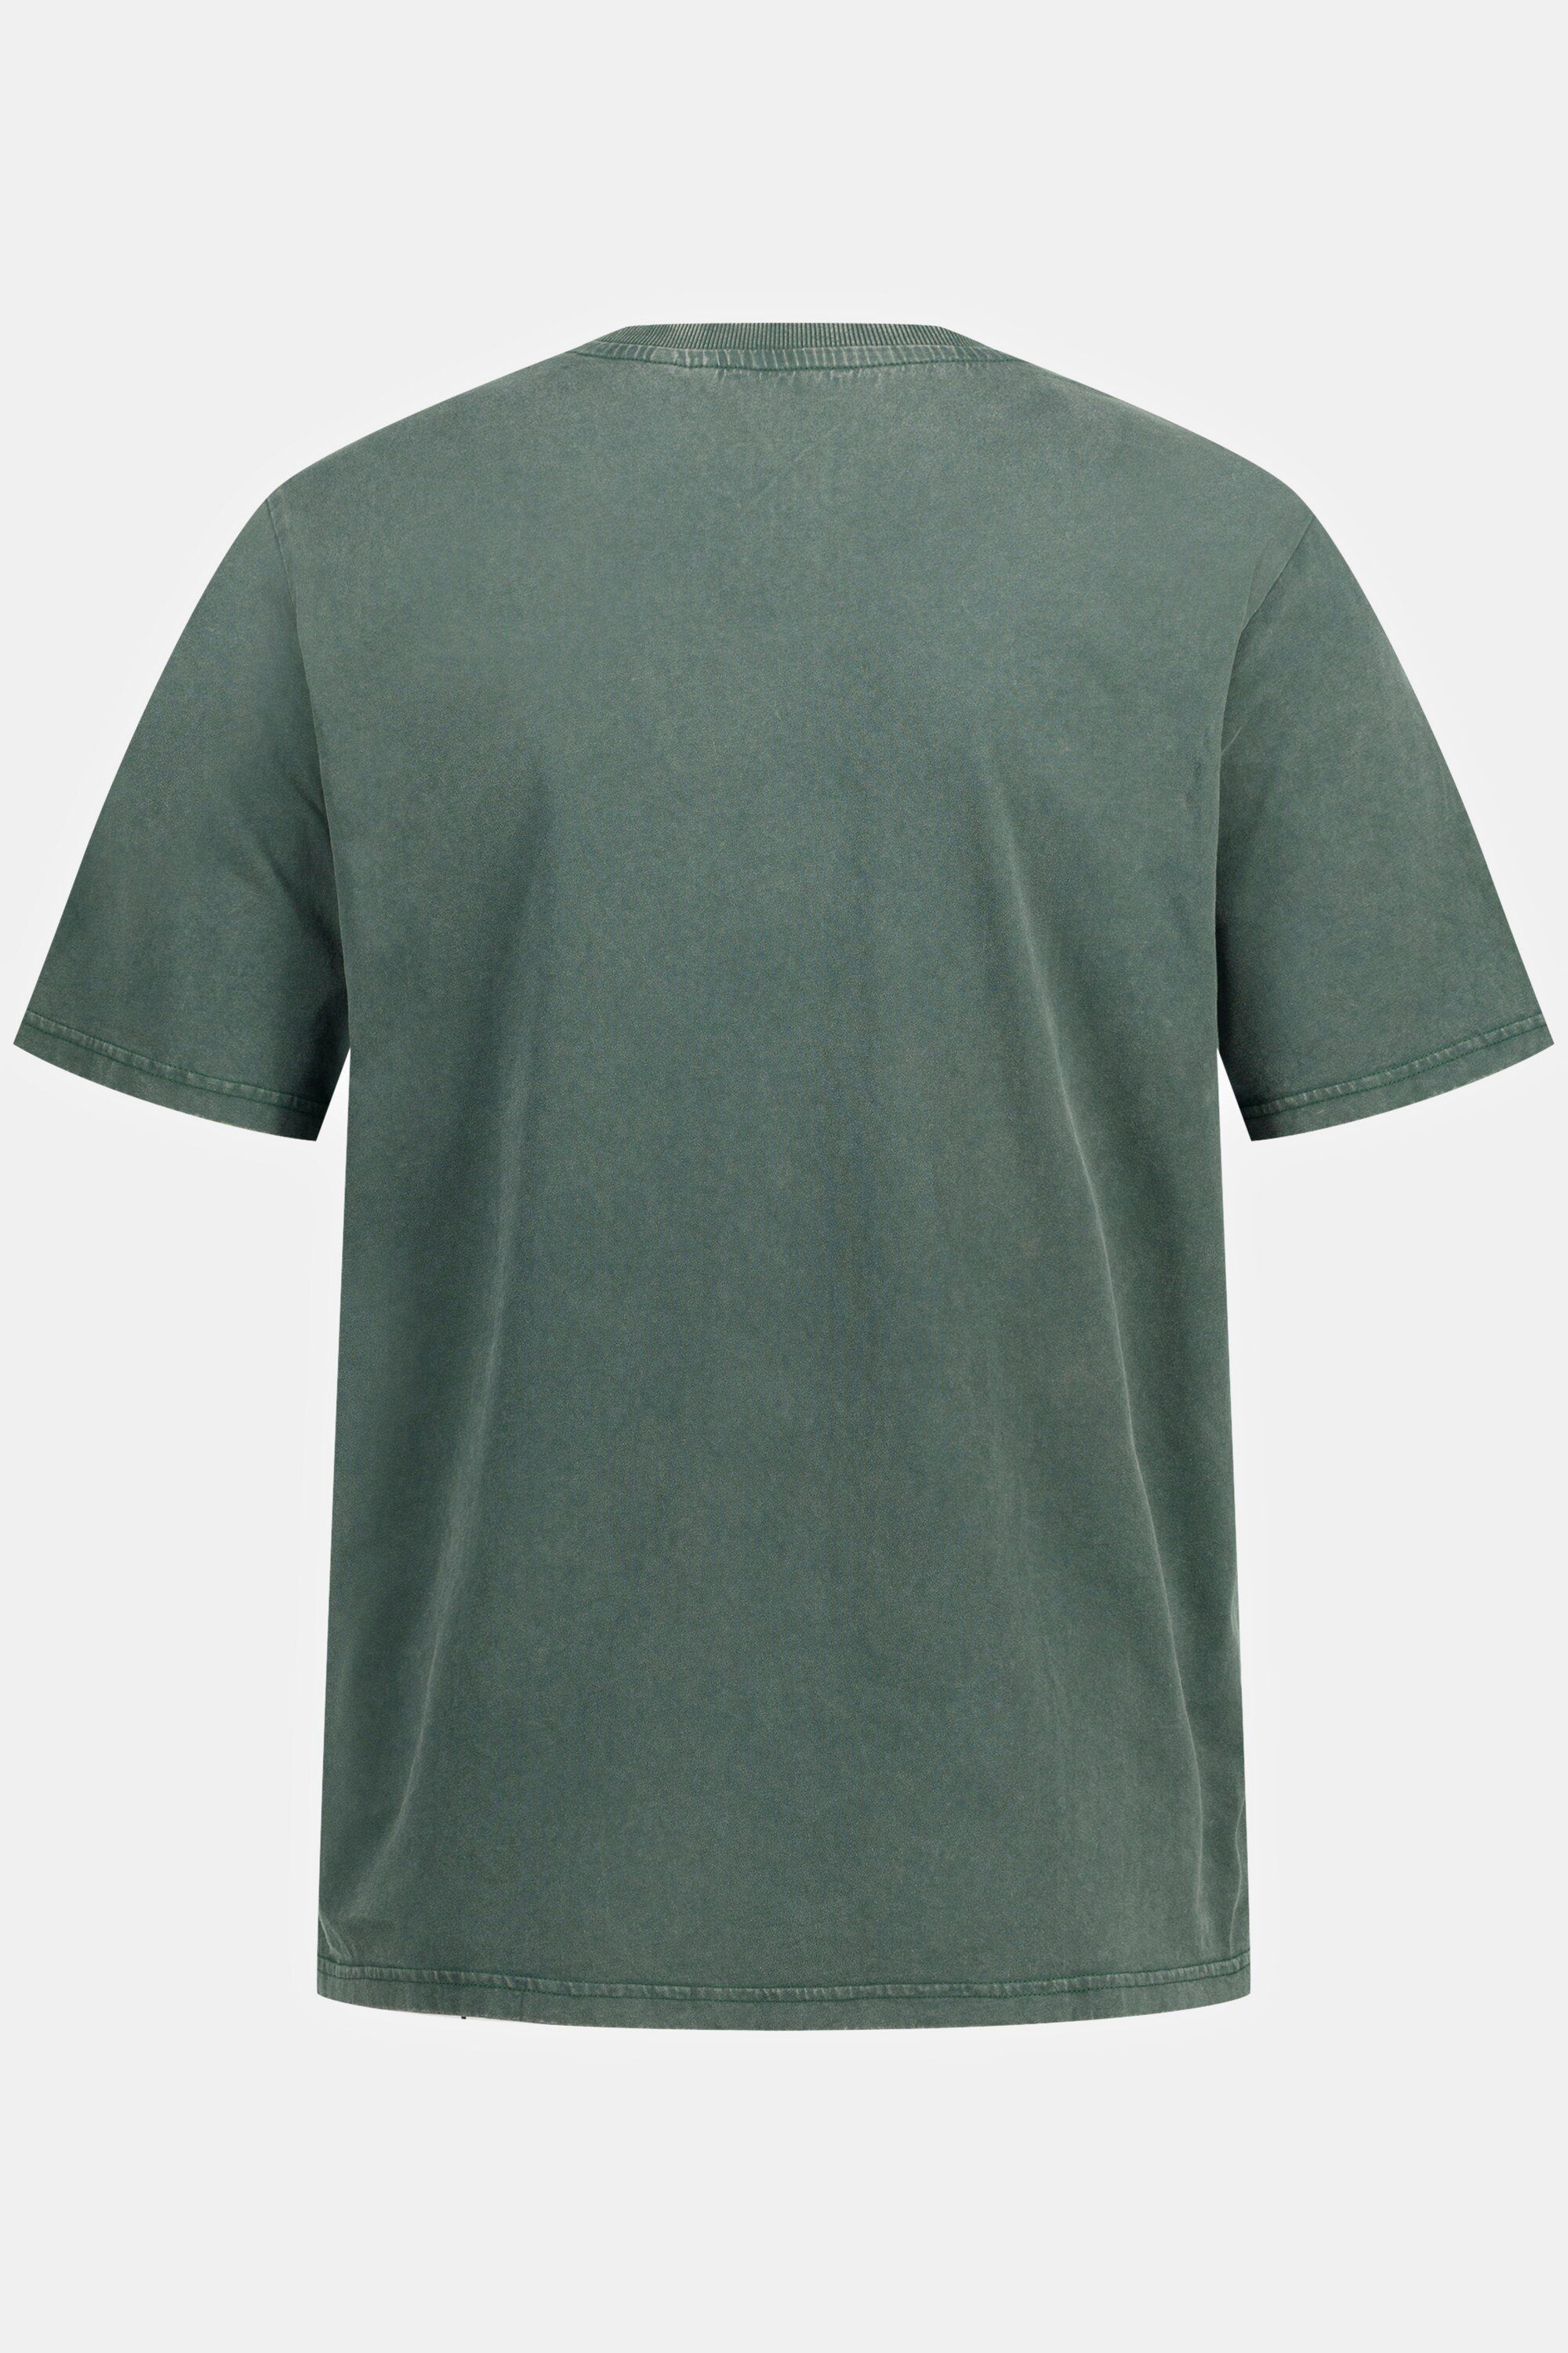 JP1880 T-Shirt T-Shirt Halbarm acid grün Brusttasche Rundhals washed